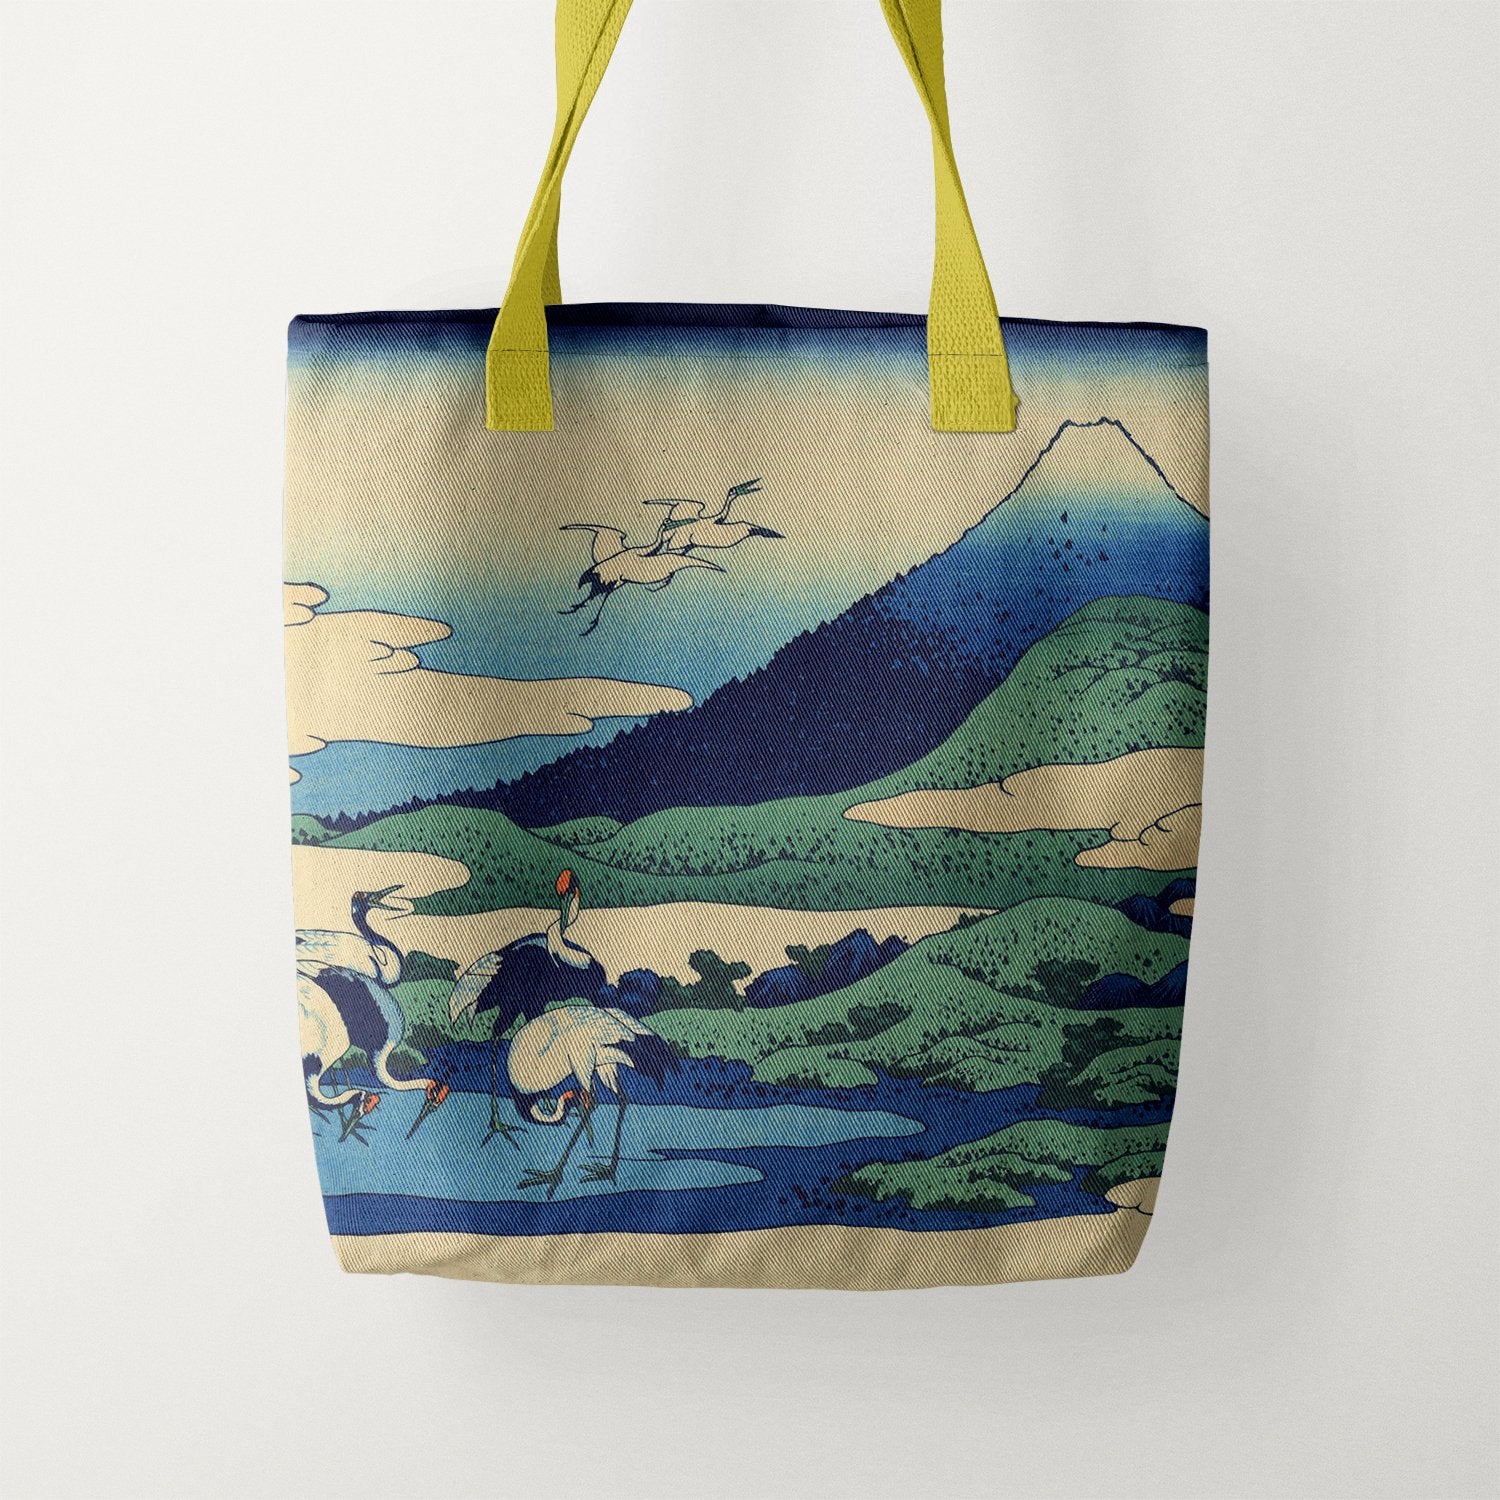 Sagami Province, by Hokusai